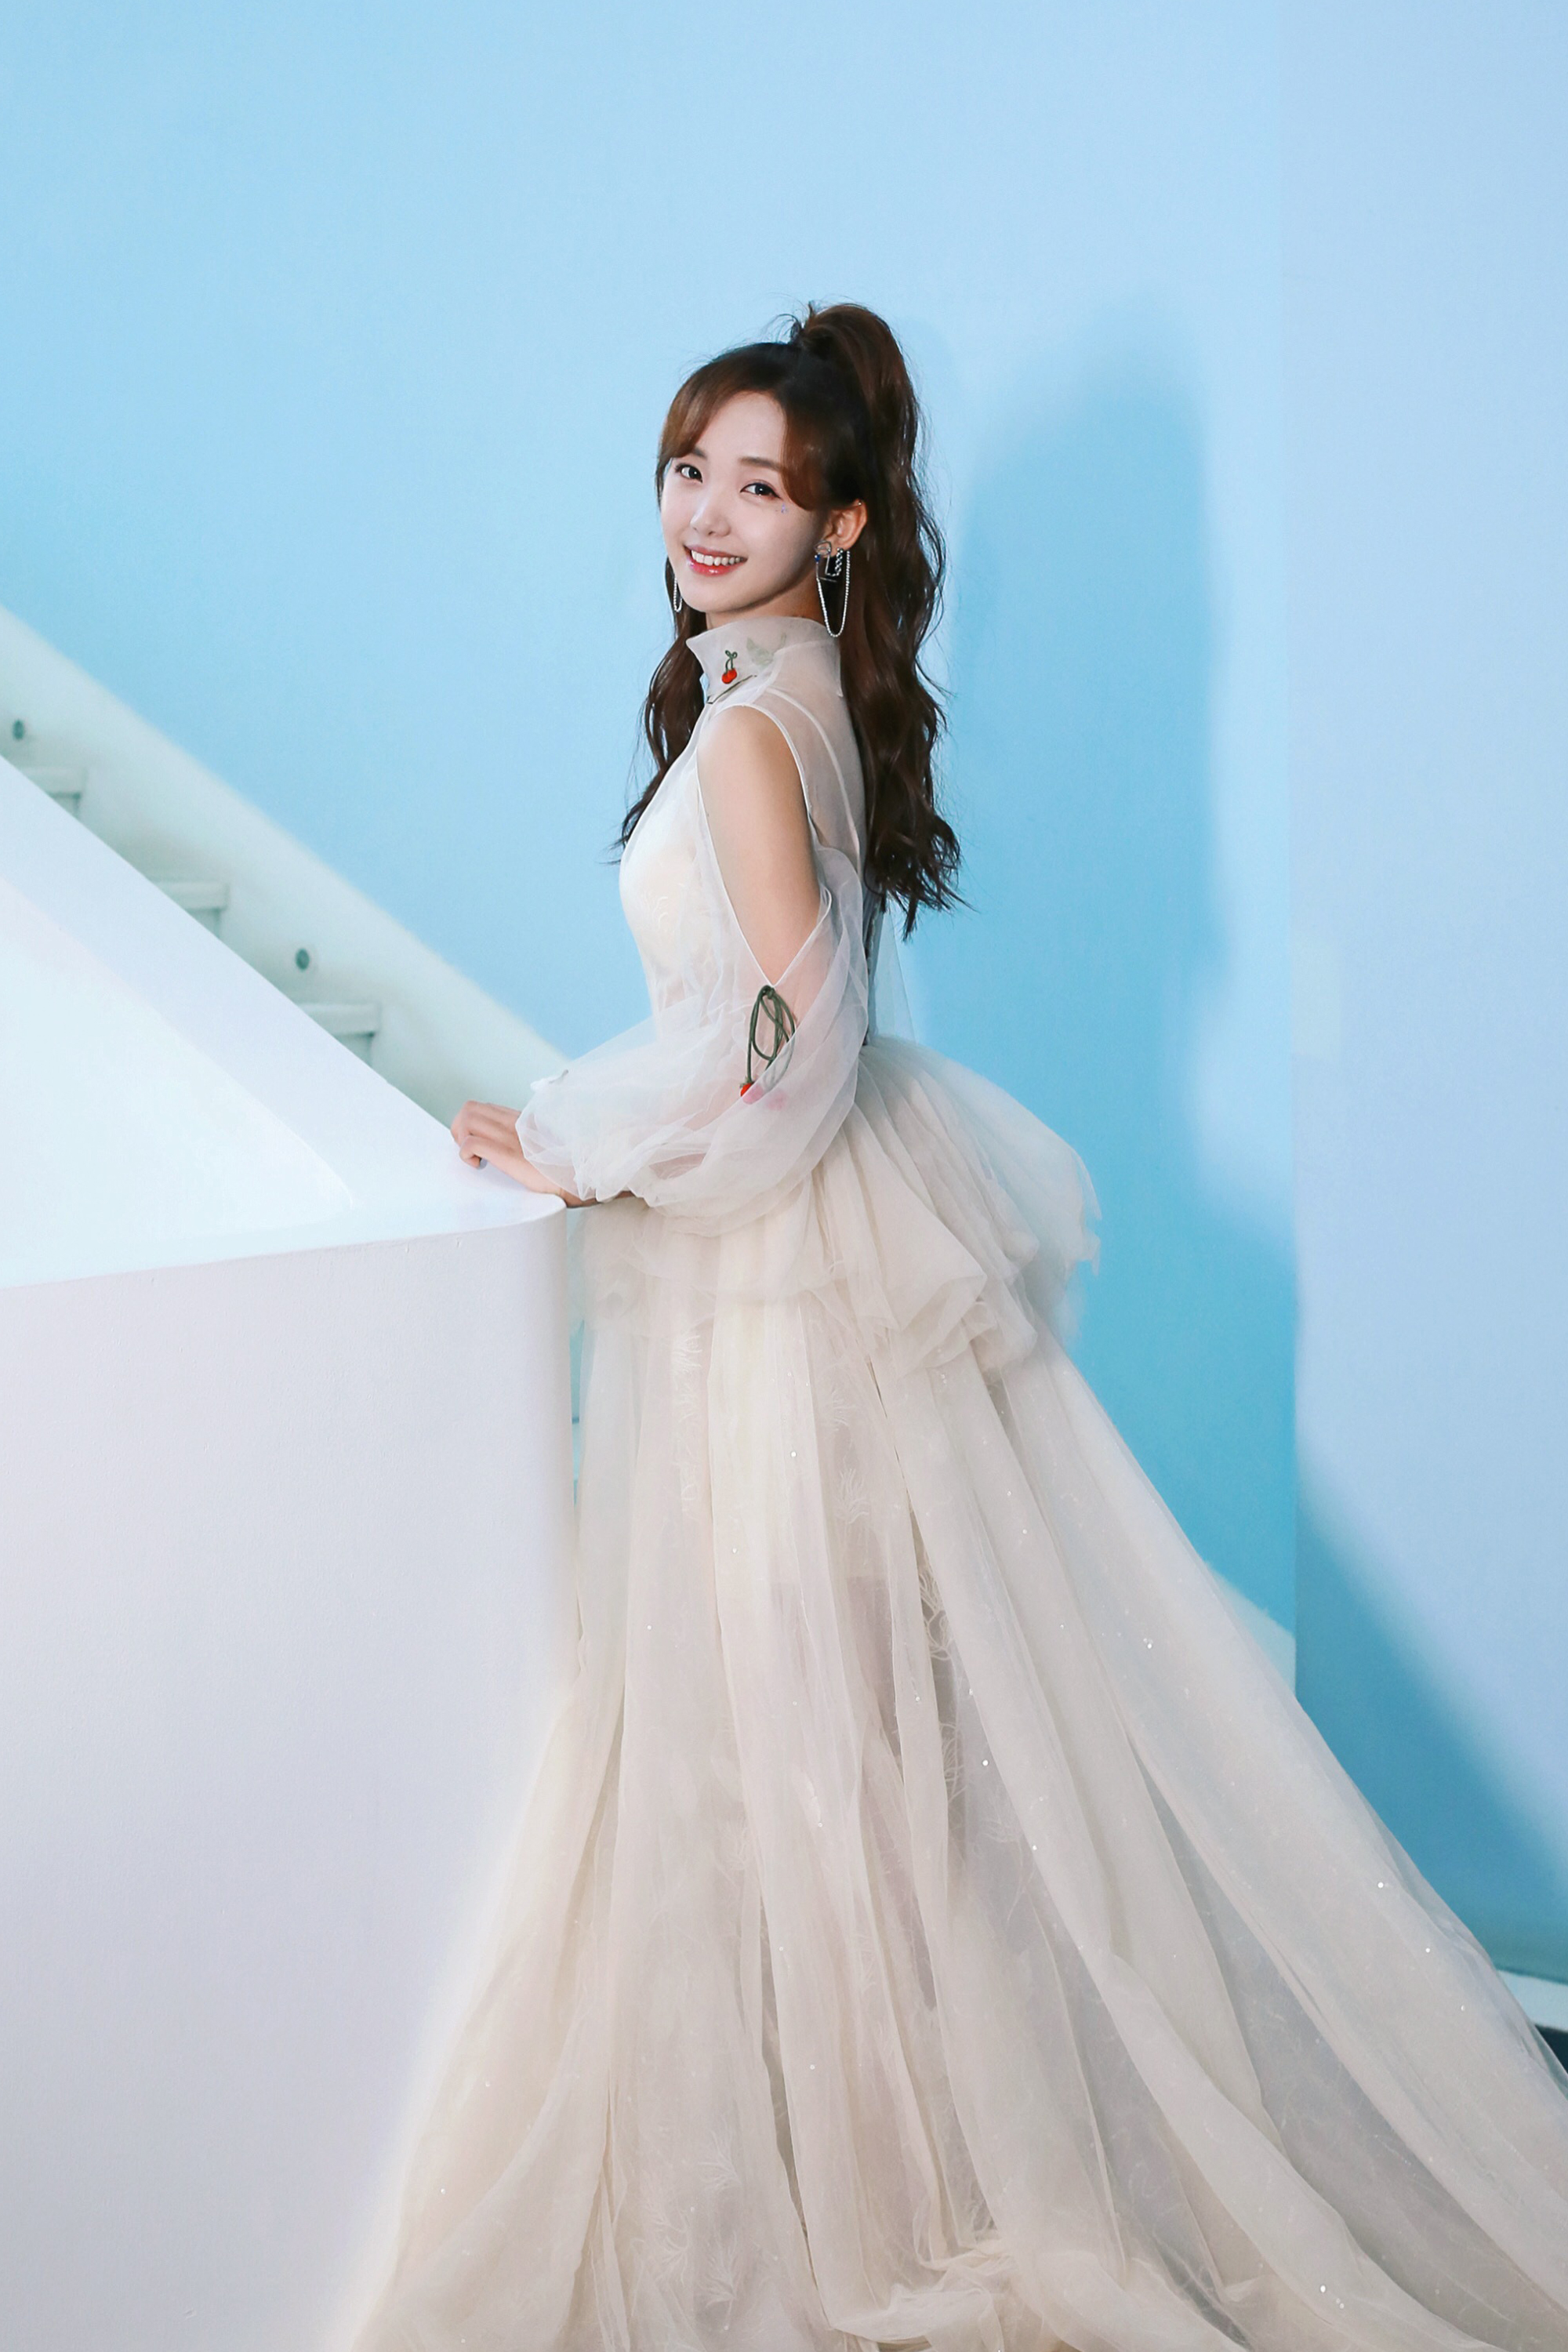 吕小雨活动宣传美照,身穿一款白纱长裙甜美清新